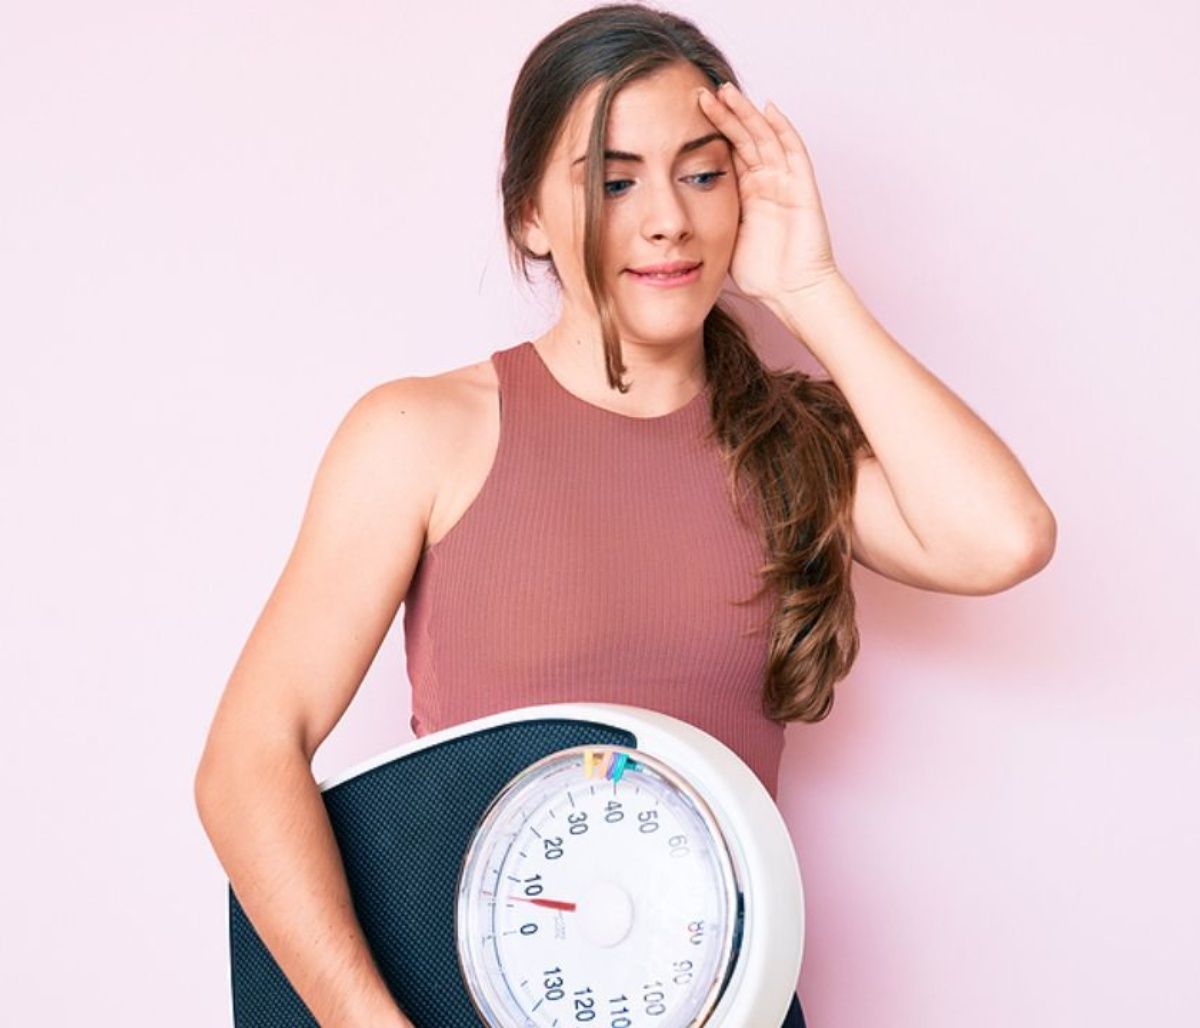 απώλεια βάρους και ηλικία: τι πρέπει να γνωρίζετε